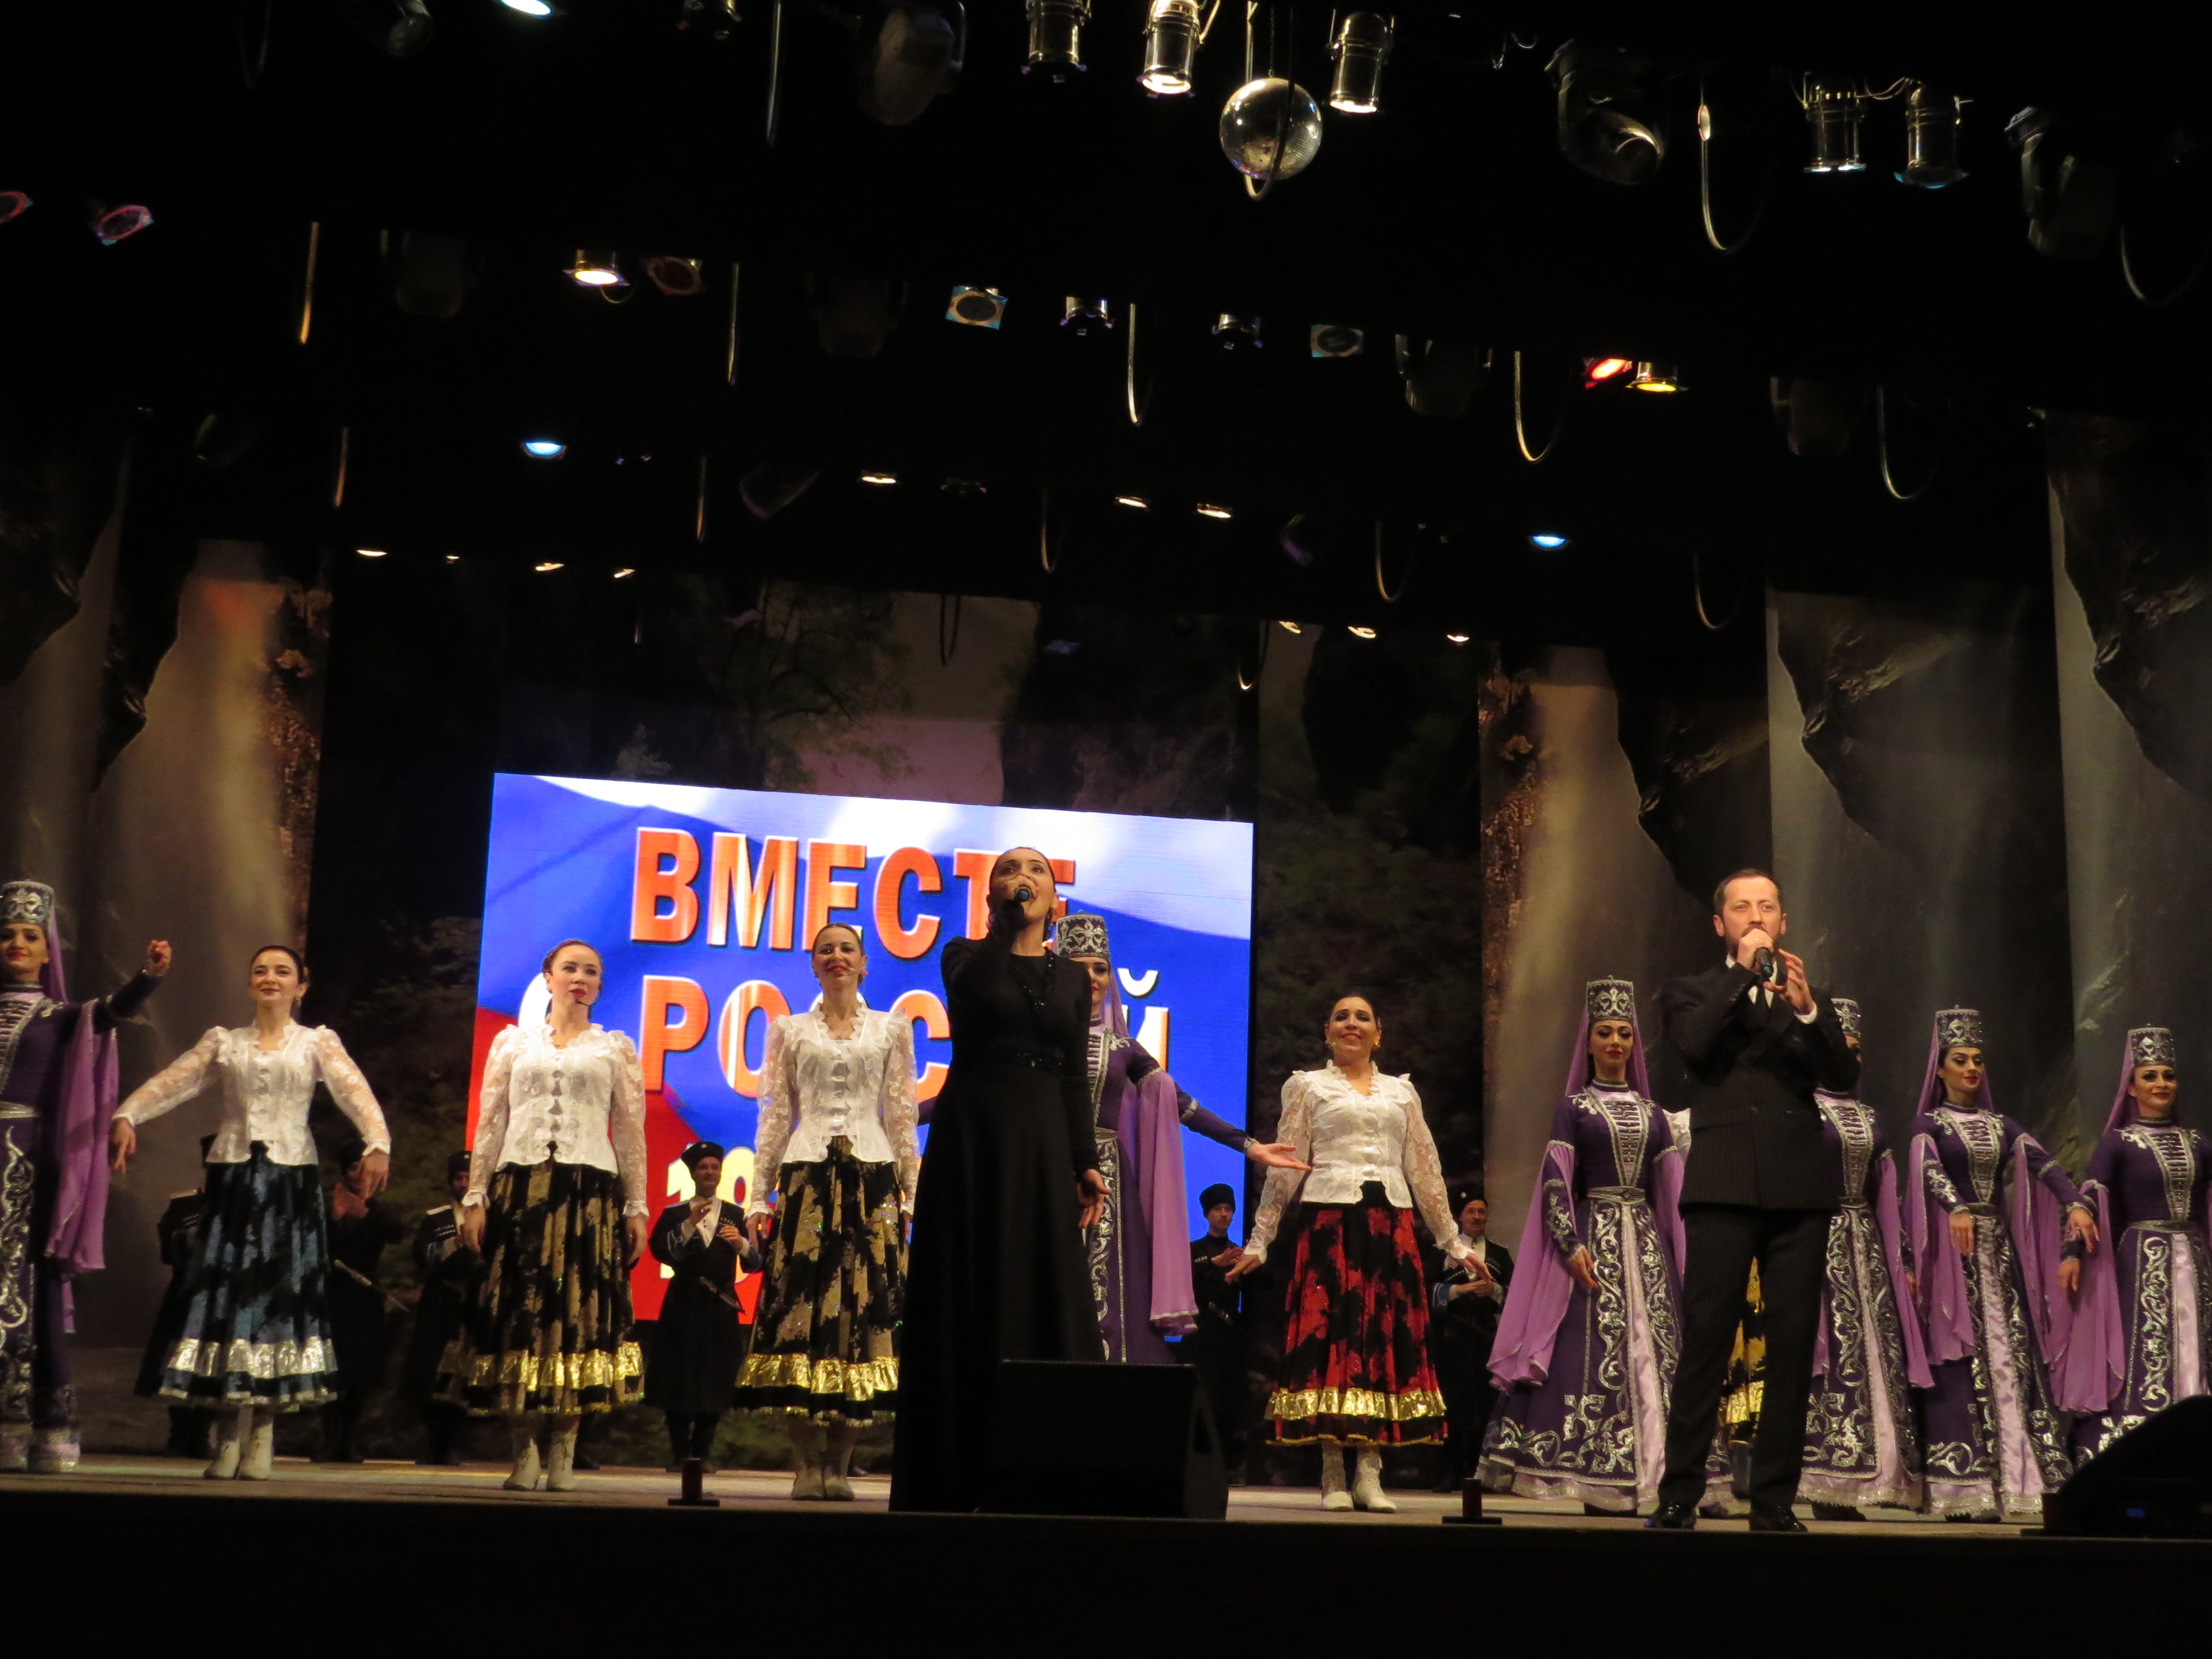 Годовщину вхождения Балкарии в состав Российского государства отметили праздничным концертом 